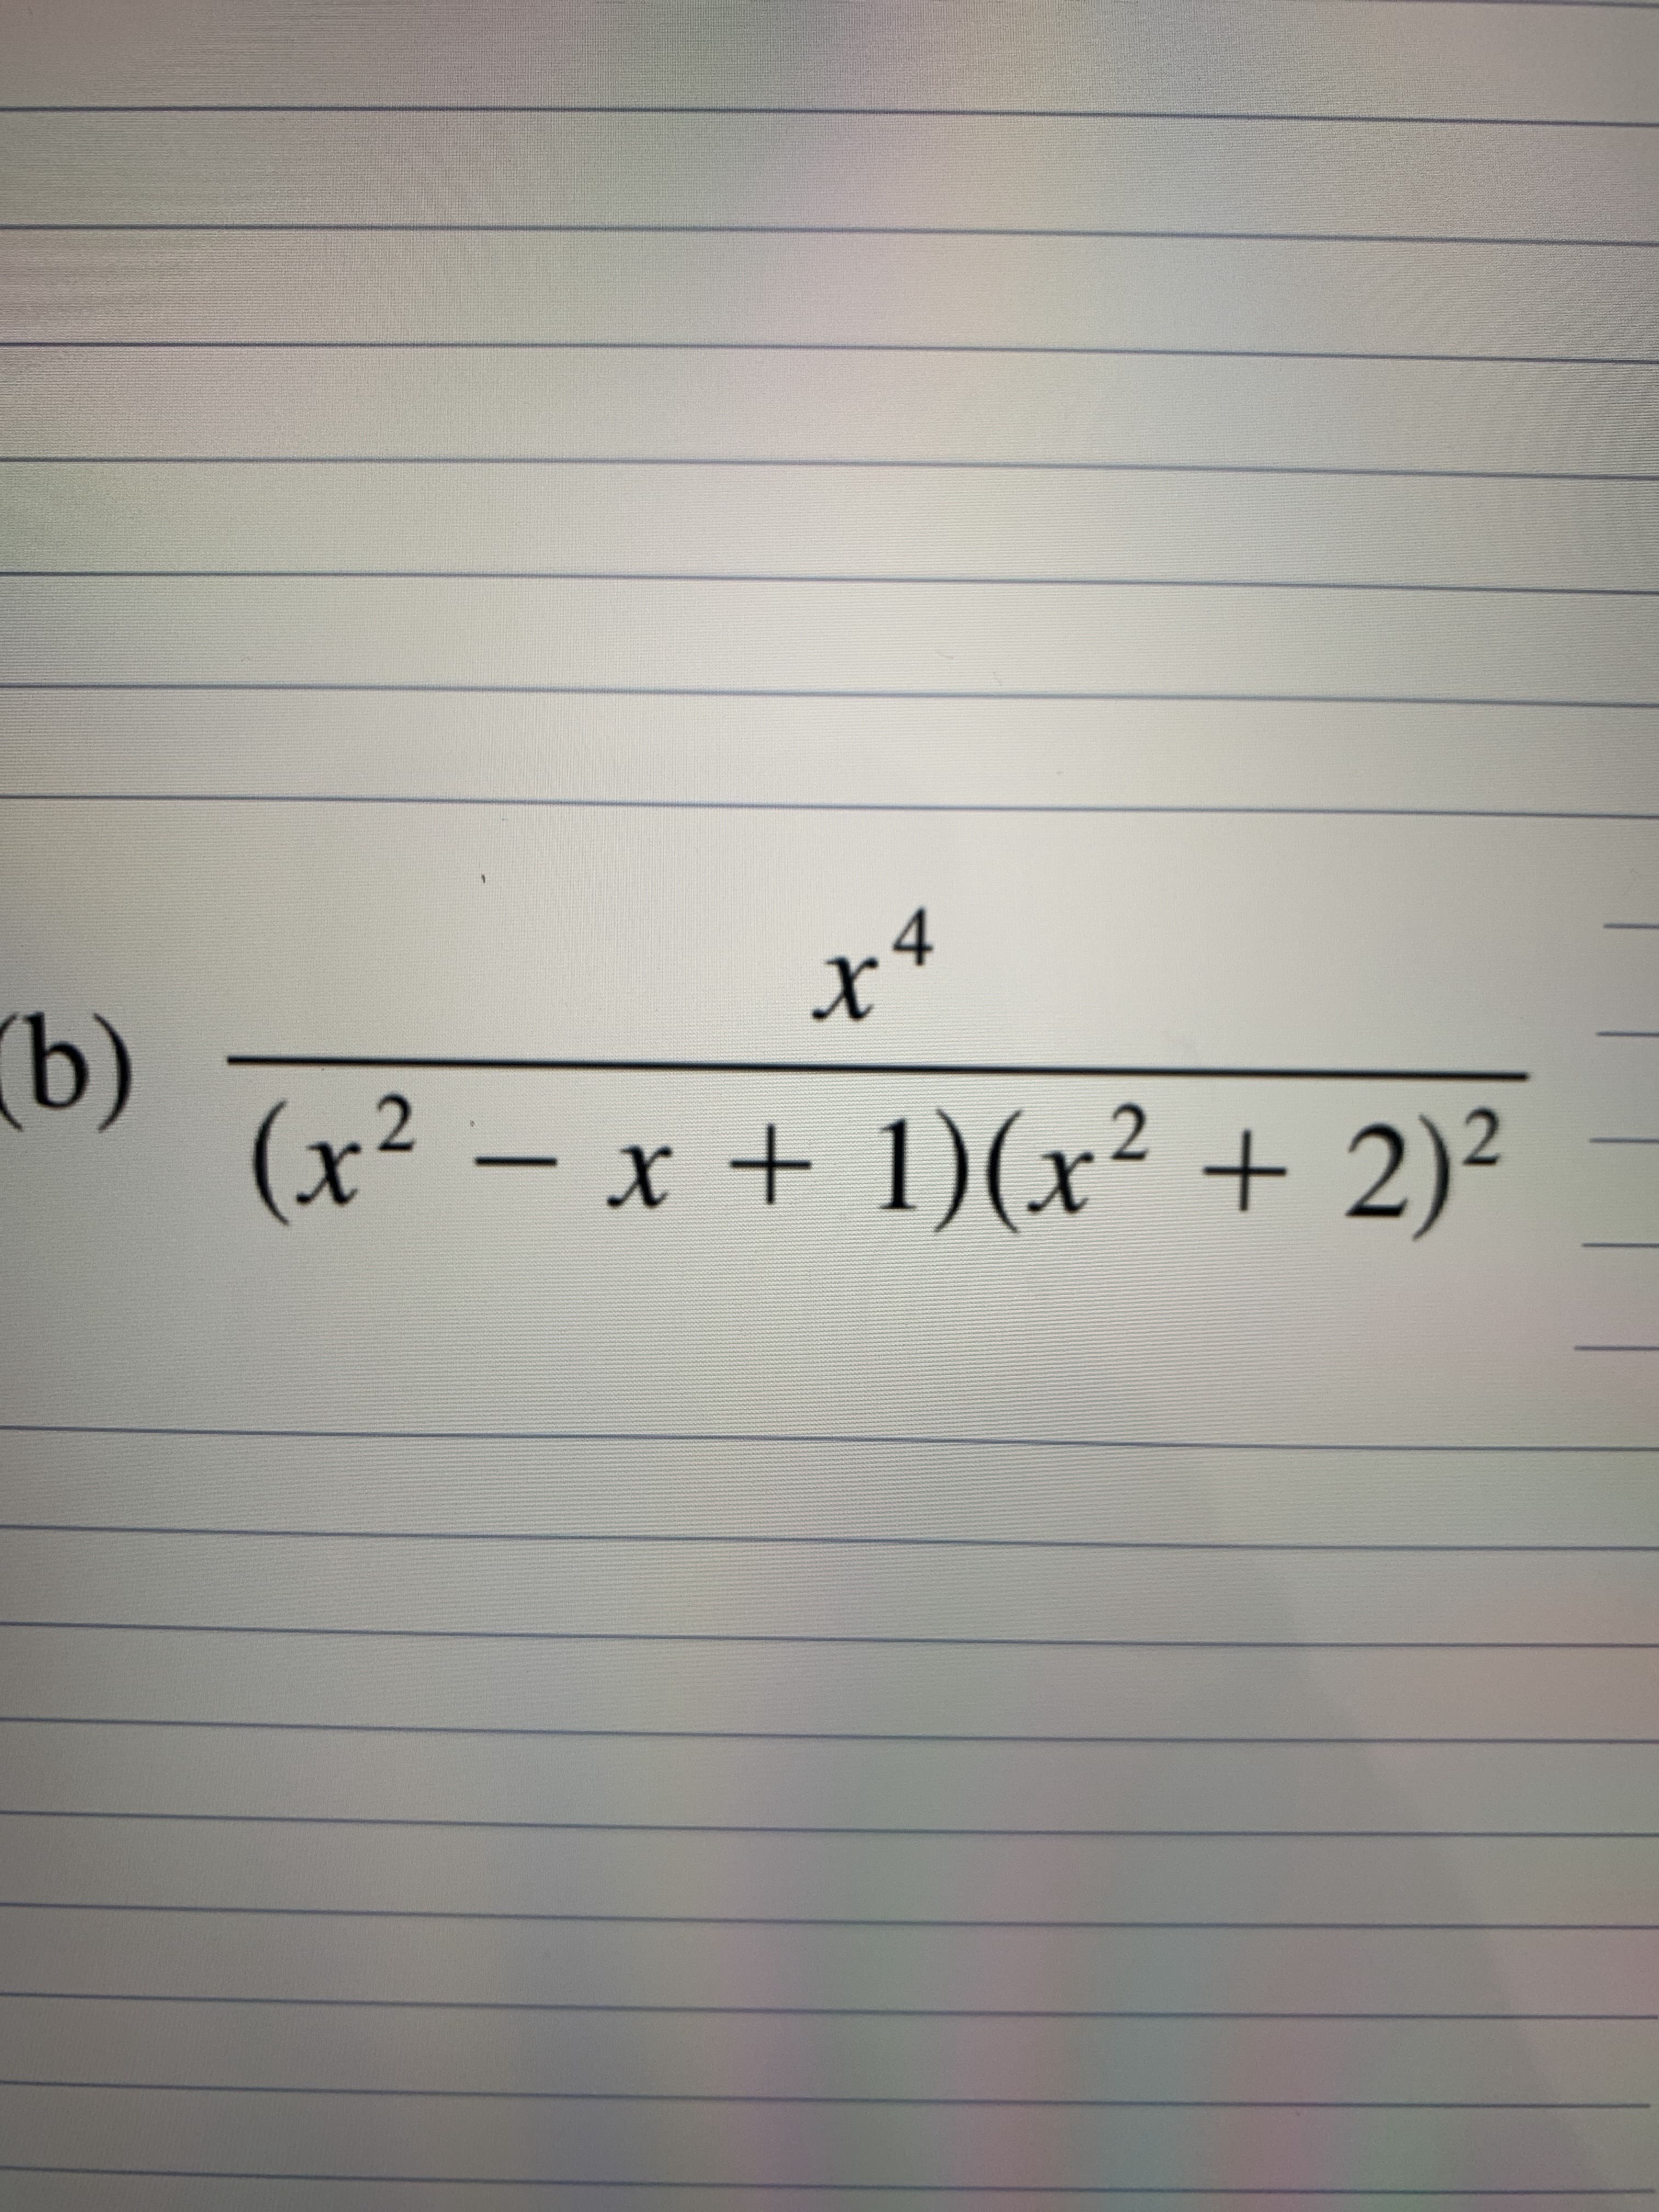 4
x*
(x² – x + 1)(x² + 2)²
